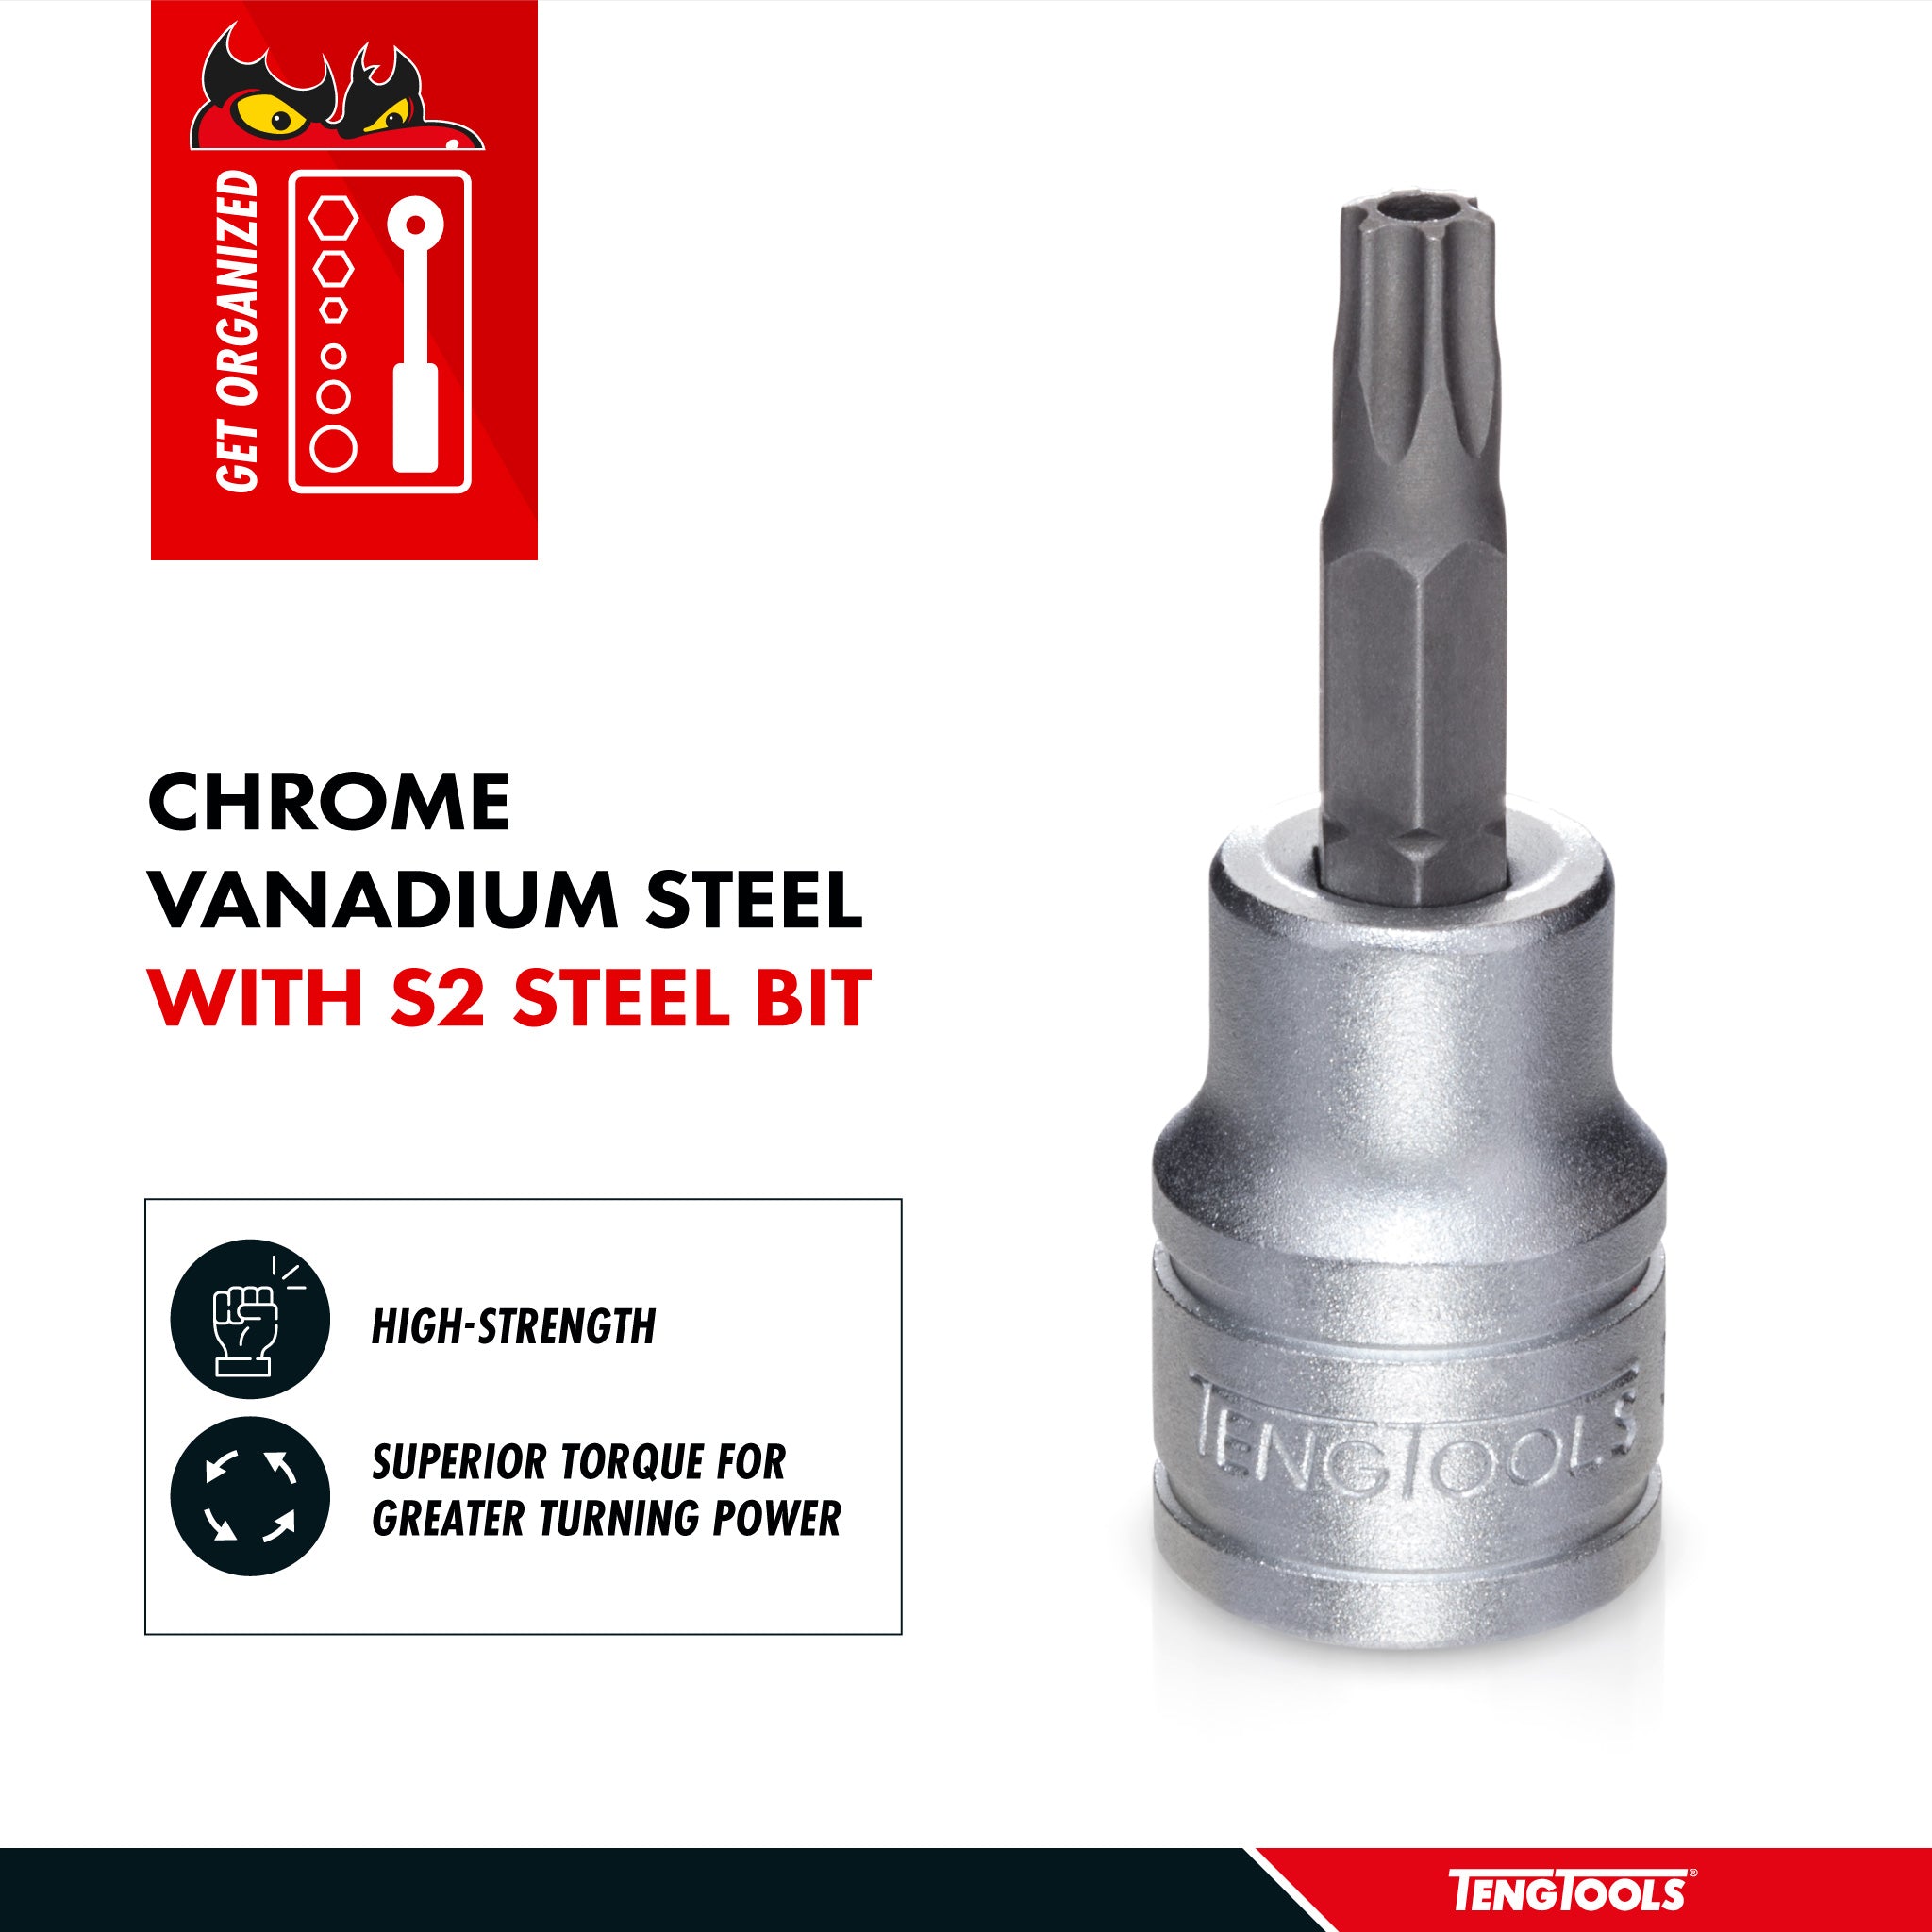 Teng Tools 1/2 Inch Drive Tamper Proof Torx TPX Chrome Vanadium Sockets - TPX20